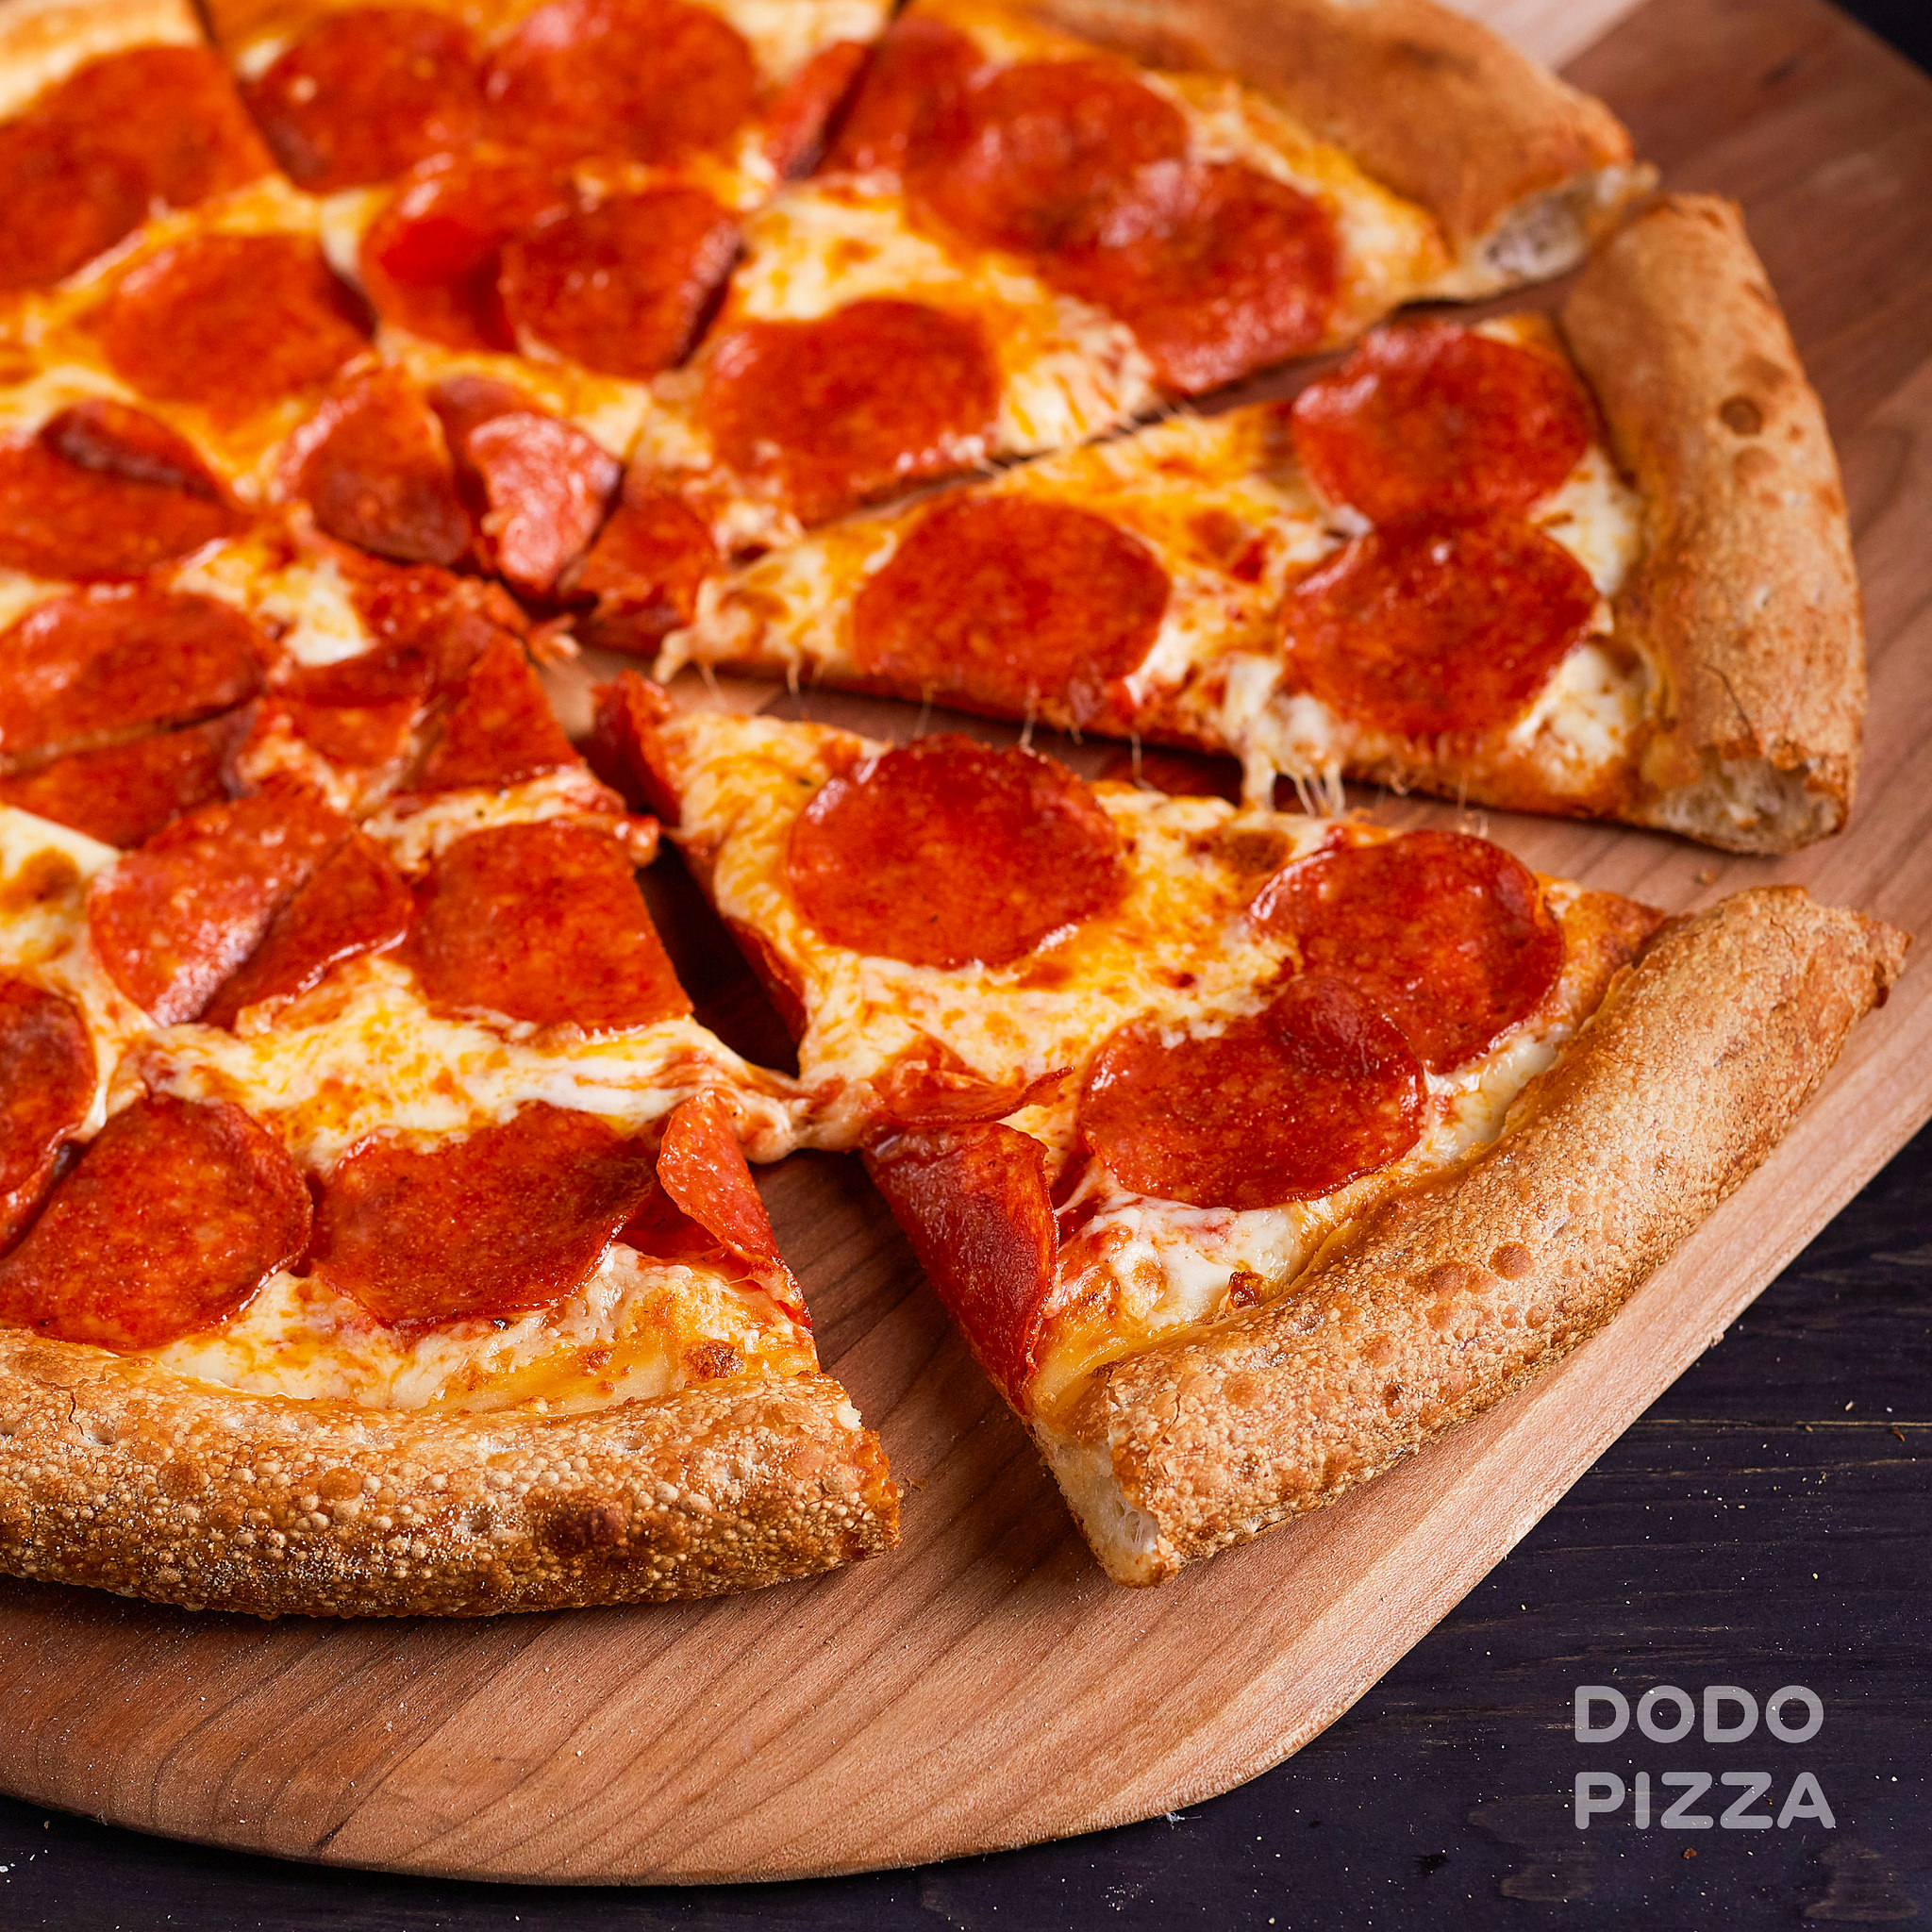 сколько стоит большая пицца пепперони в додо пицце фото 3